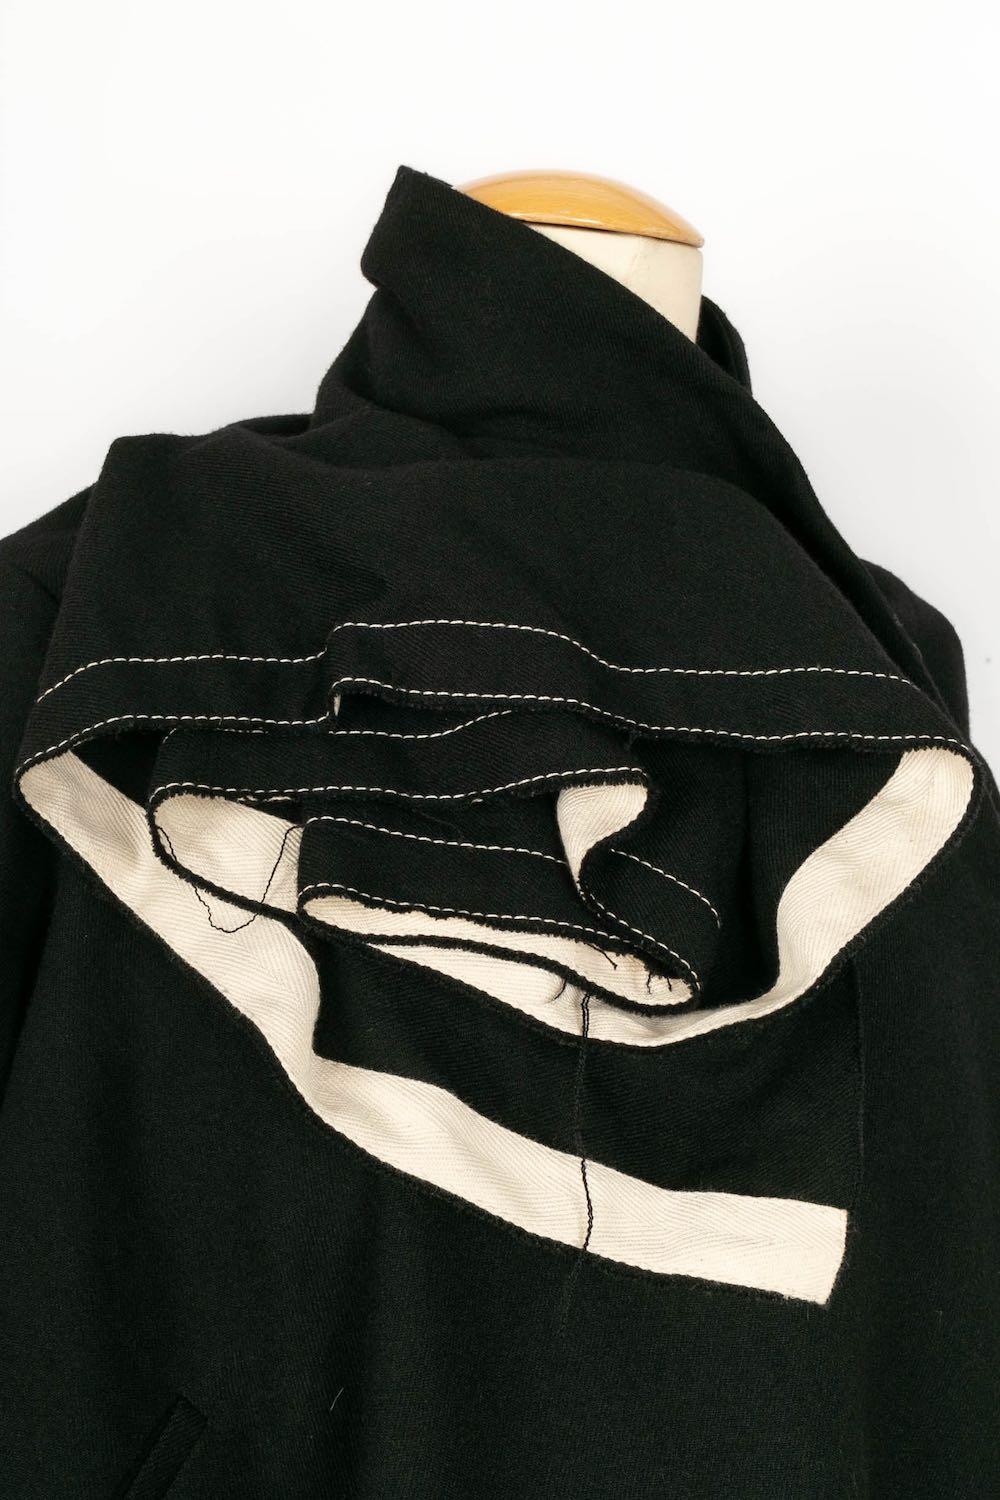 Peachoo + Krejberg Jacket in Black Wool and Beige Canvas, 2008-2009 For Sale 1